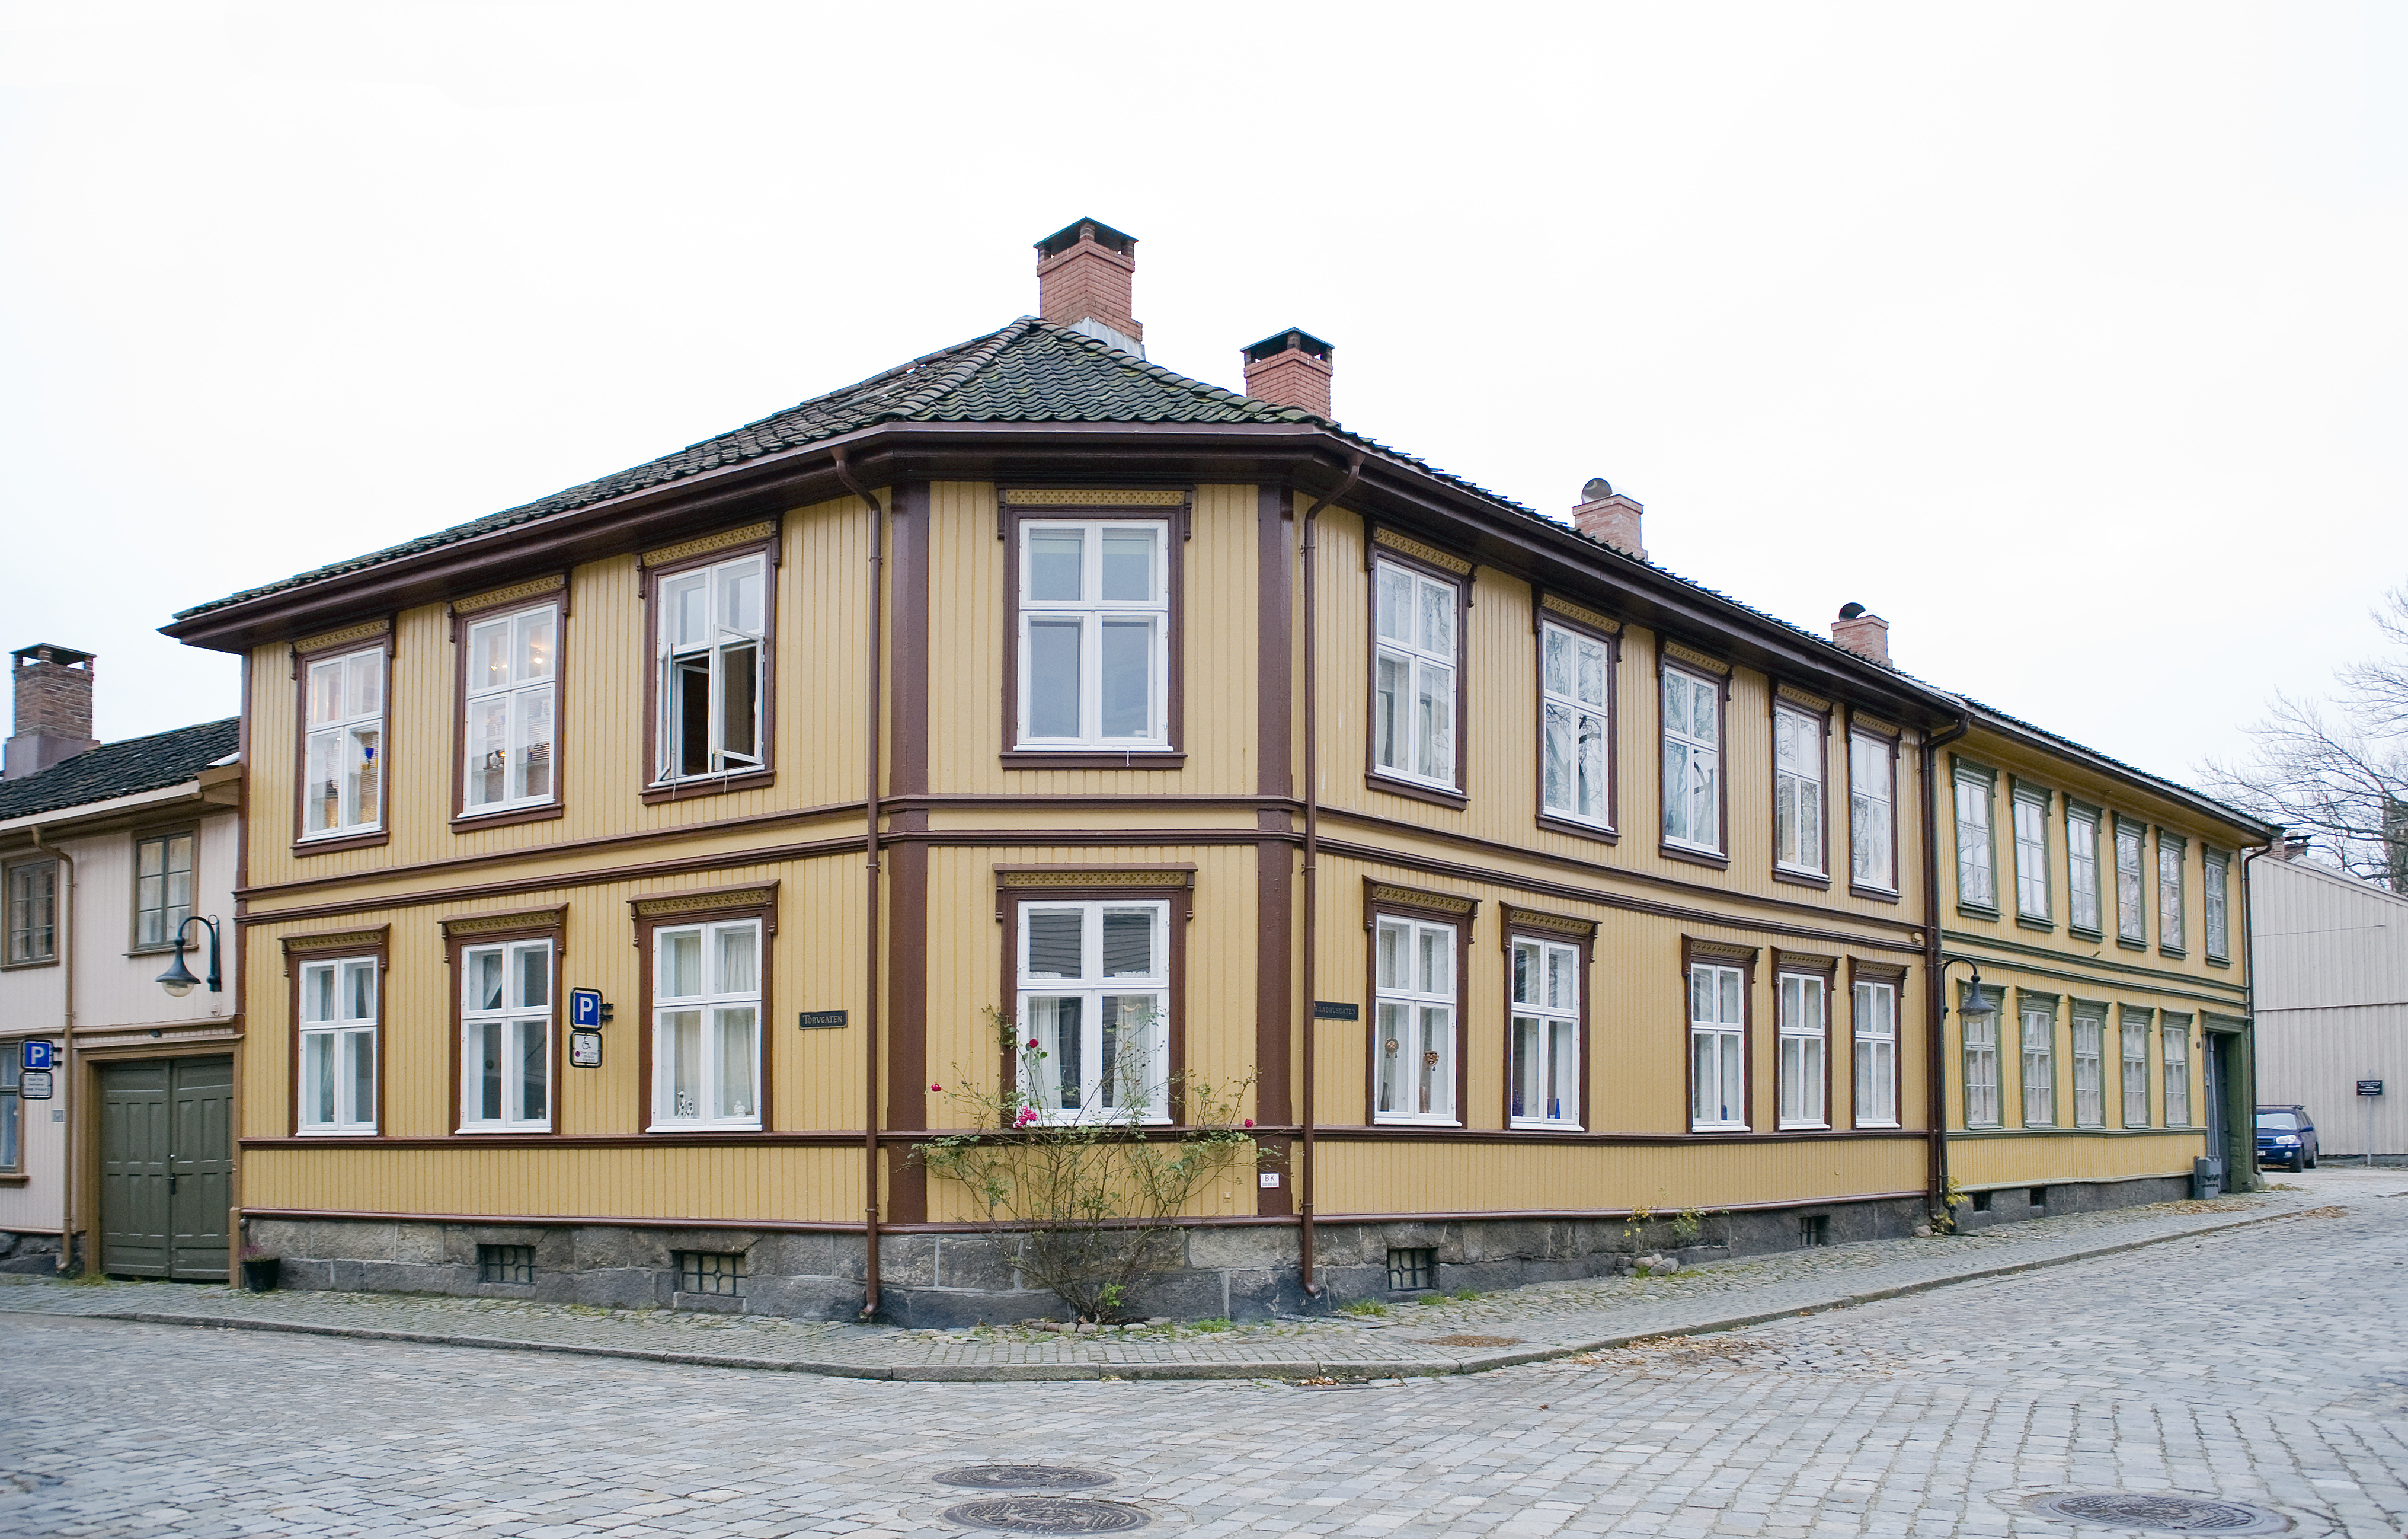 Eksempel på bygård i sveitserstil. Dette huset ligger i Gamlebyen i Fredrikstad. Det har trolig tilnærmet lik opprinnelig fargesetting. Tidstypiske krysspostvinduer med flotte detaljer i omrammingen.